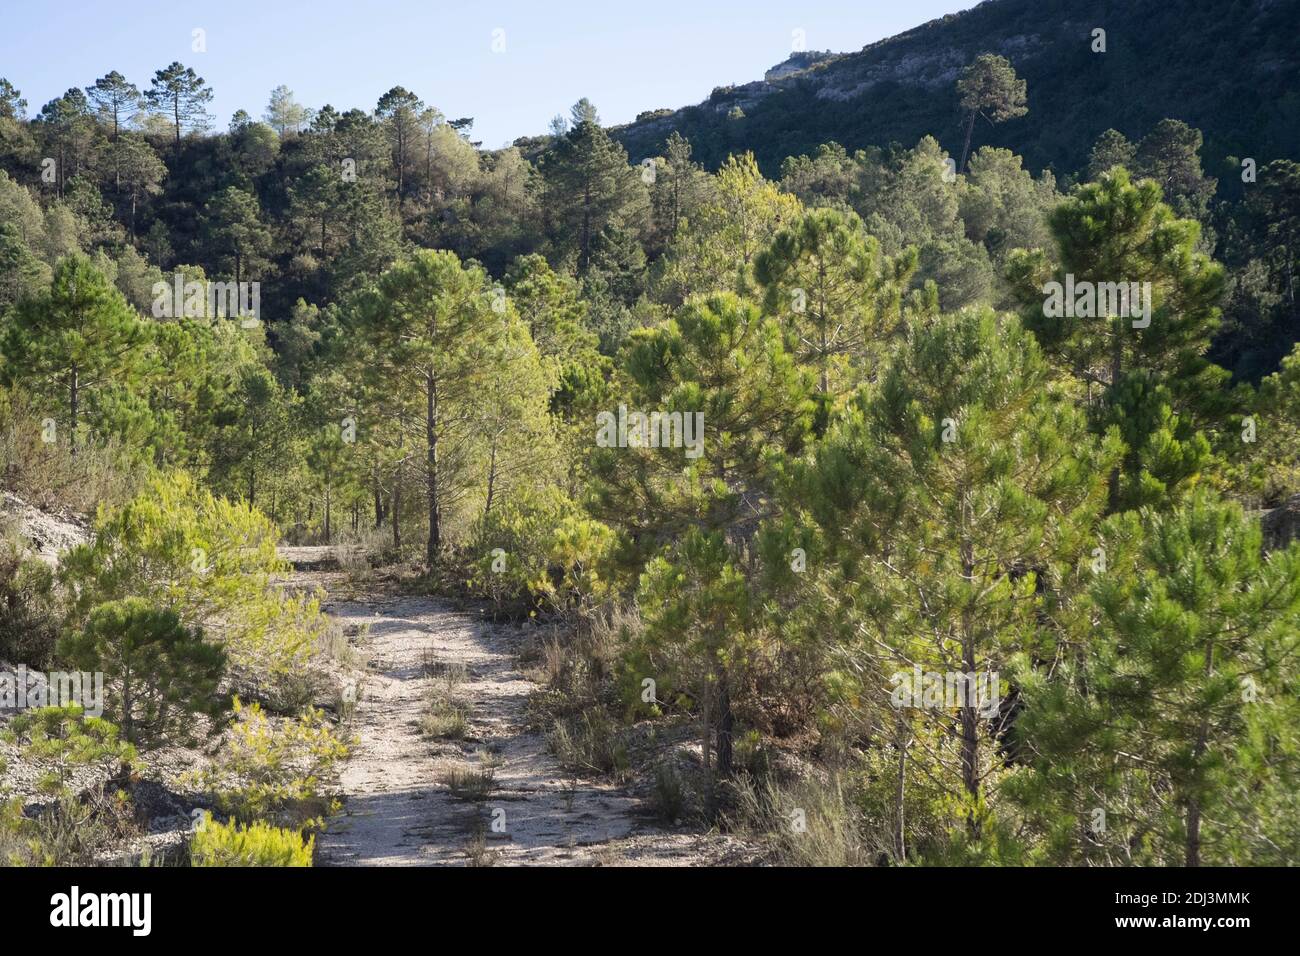 Una pista forestale nei pressi di una collina nella campagna spagnola Foto Stock